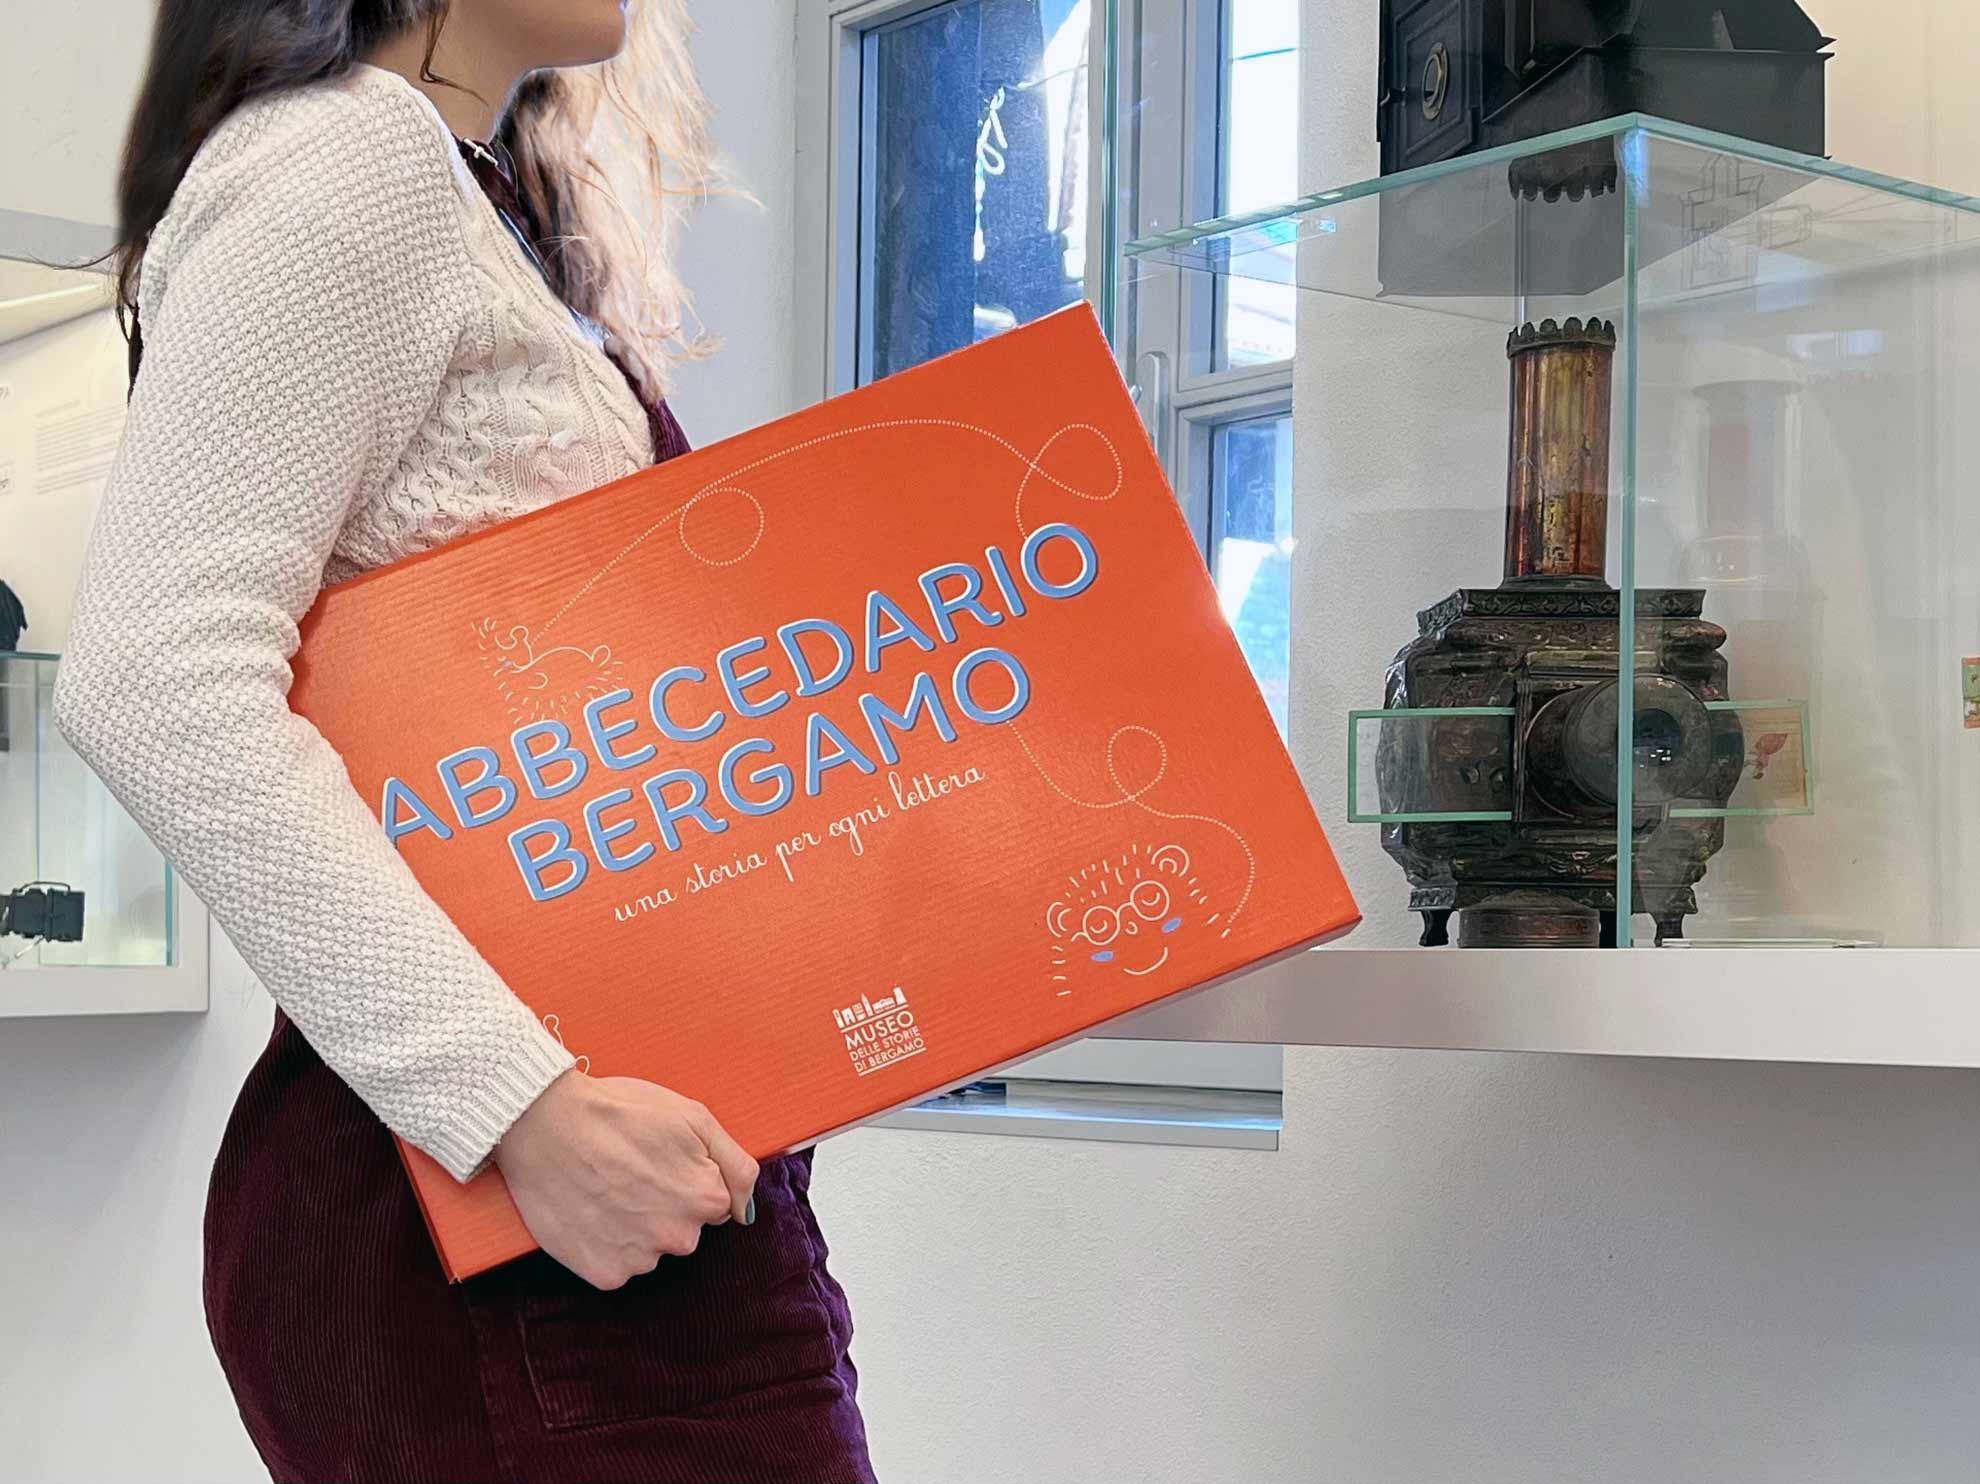 una ragazza tiene in mano una valigetta rossa con scritto "Abbecedario Bergamo"